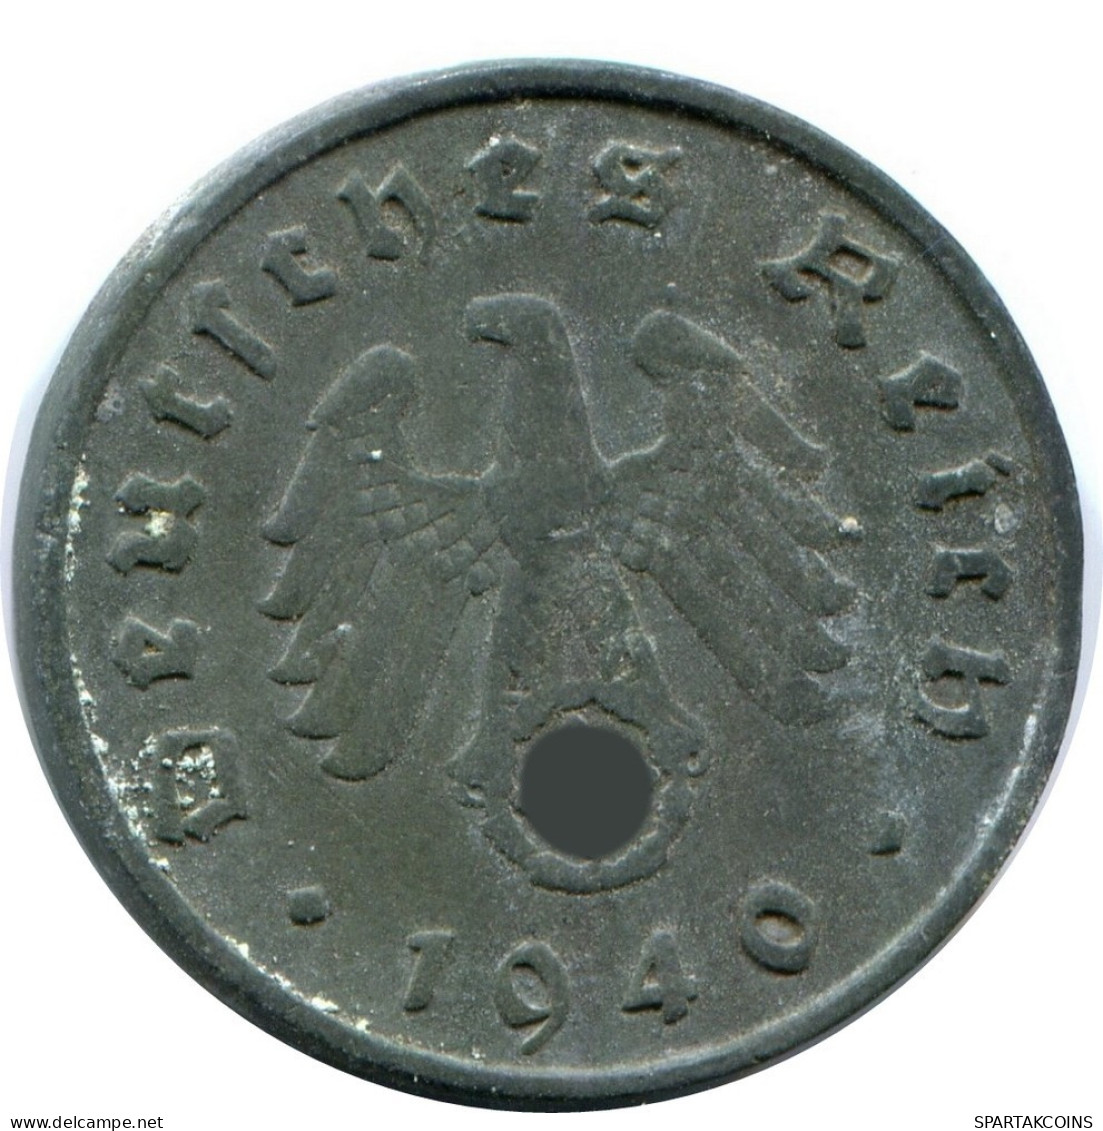 10 REICHSPFENNIG 1940 A GERMANY Coin #AW968.U.A - 10 Reichspfennig